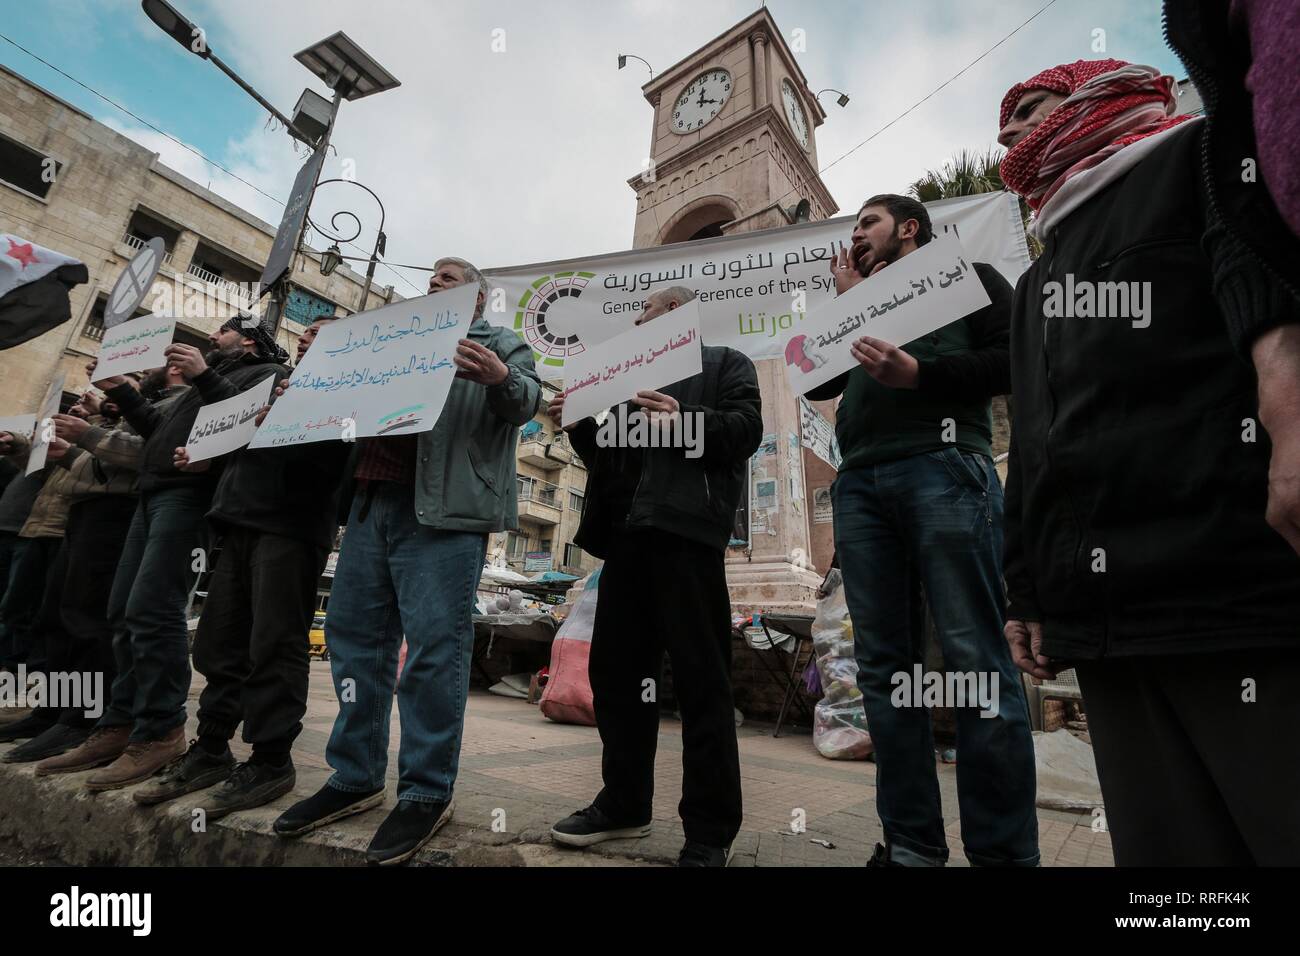 Idleb, Idlib, en Syrie. Feb 24, 2019. Les militants sont vu la tenue des pancartes pendant la manifestation.Le peuple et les militants de la ville d'Idlib, dénoncer le bombardement de villes et villages du sud d'Idlib et maintenir la responsabilité de la communauté internationale et la caution. Credit : Mohamad Saïd SOPA/Images/ZUMA/Alamy Fil Live News Banque D'Images